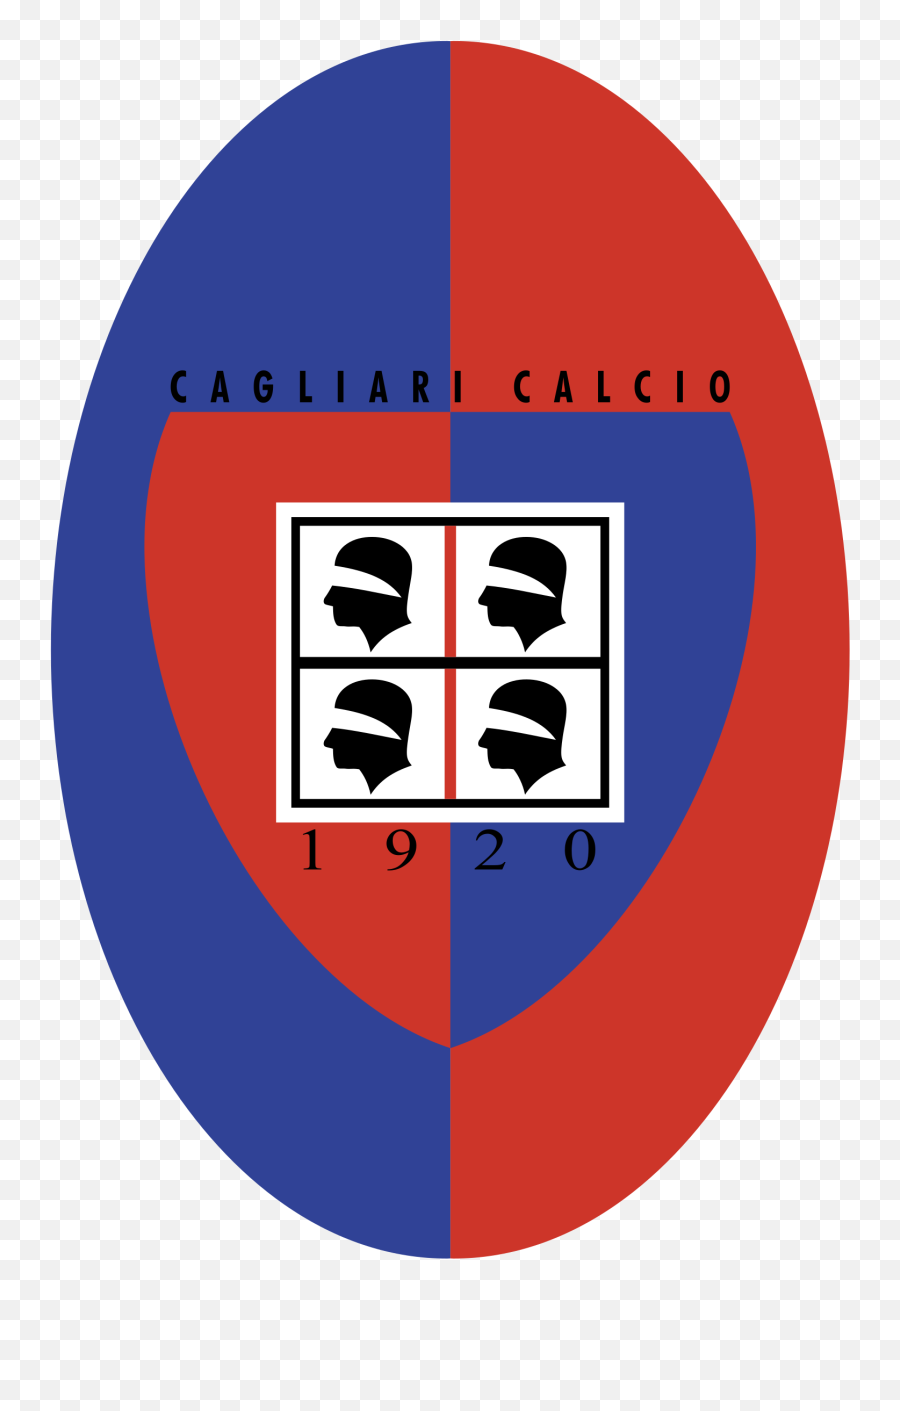 Cagliari Calcio Logo Png Transparent - Cagliari Calcio,Cigna Logo Png